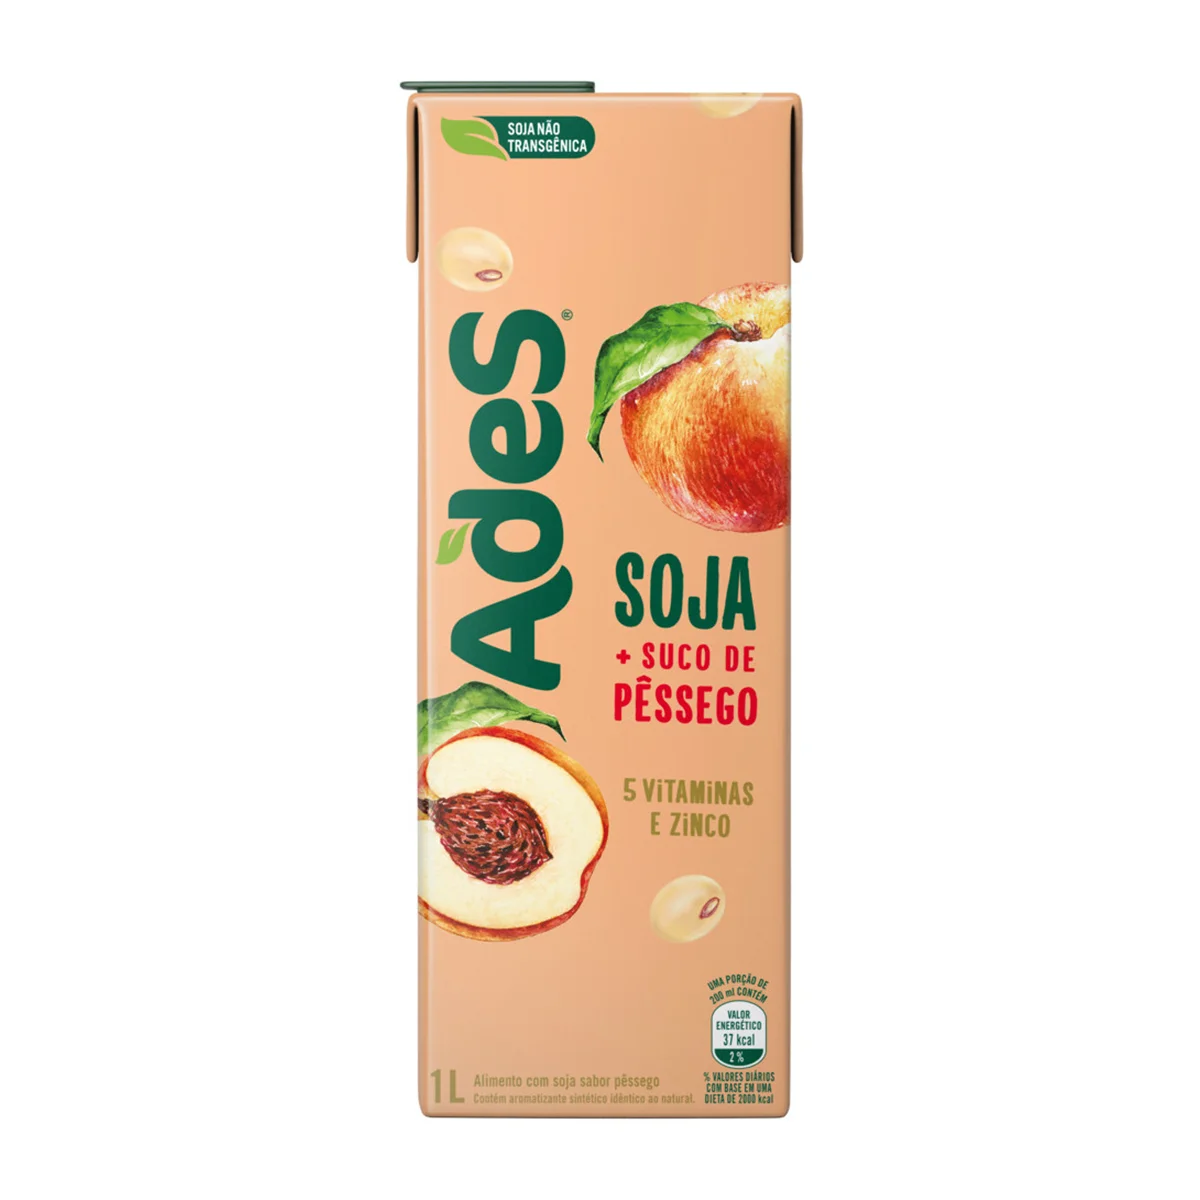 Suco de Soja Pessêgo Ades - 1l